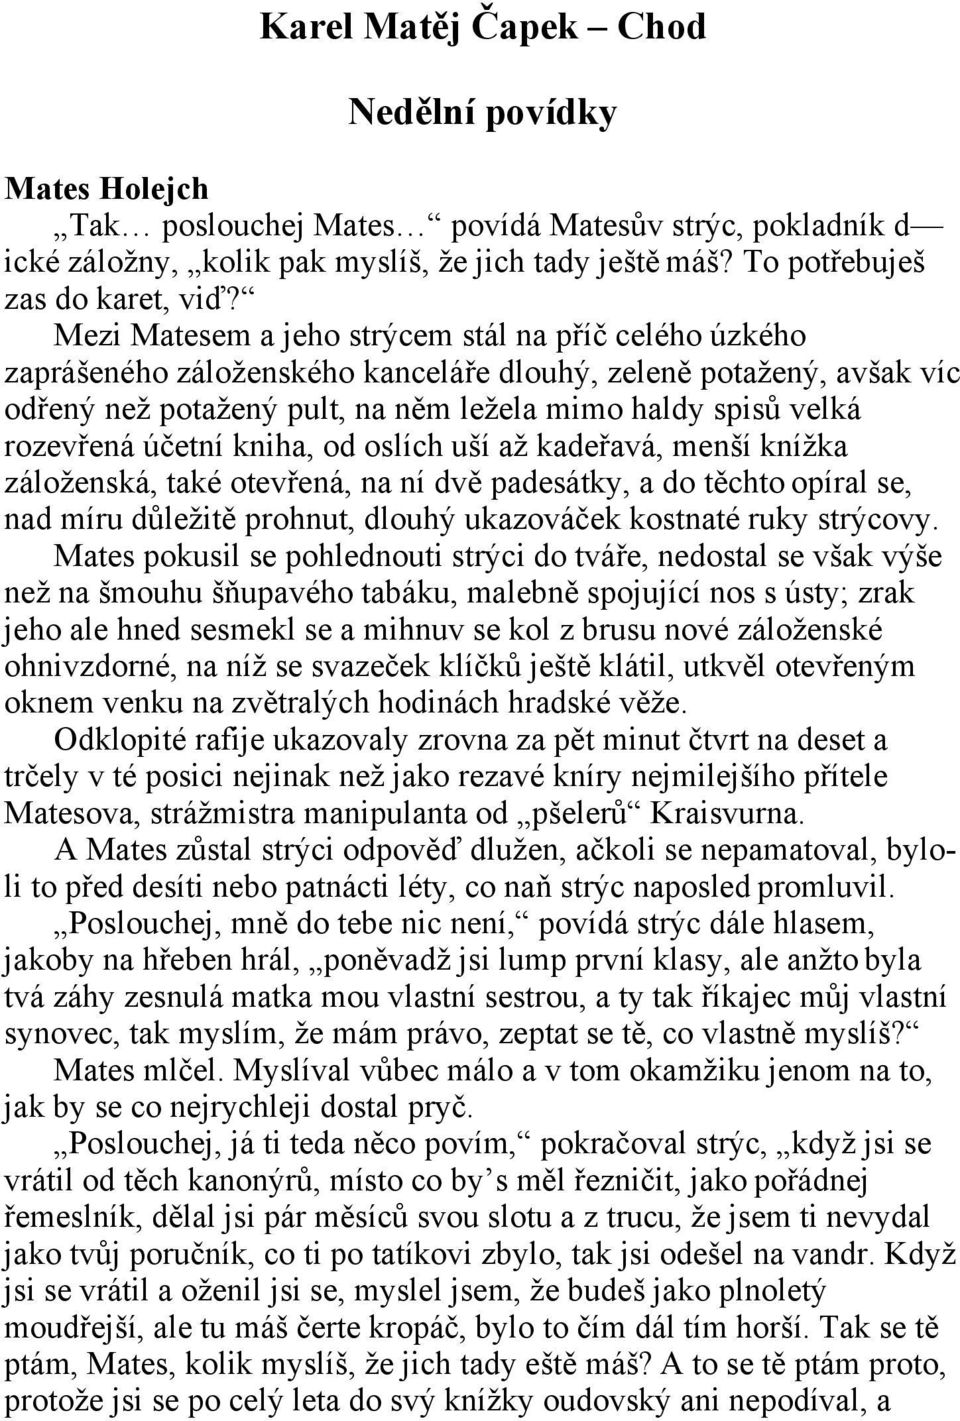 Karel Matěj Čapek Chod. Nedělní povídky - PDF Free Download